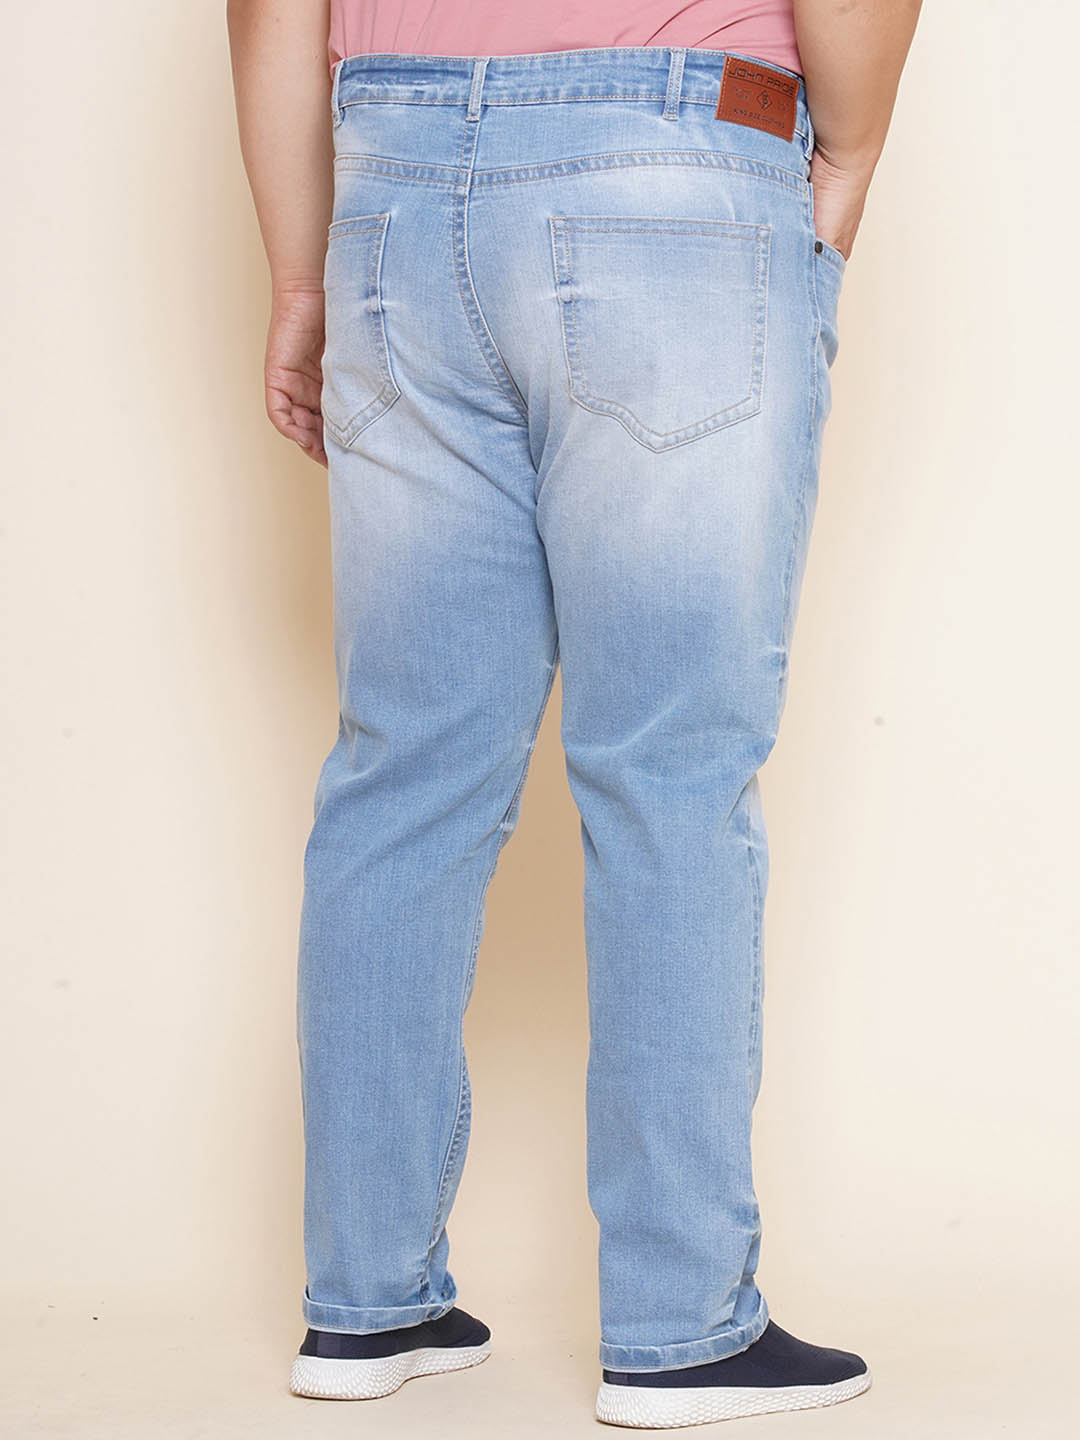 bottomwear/jeans/JPJ27062/jpj27062-5.jpg